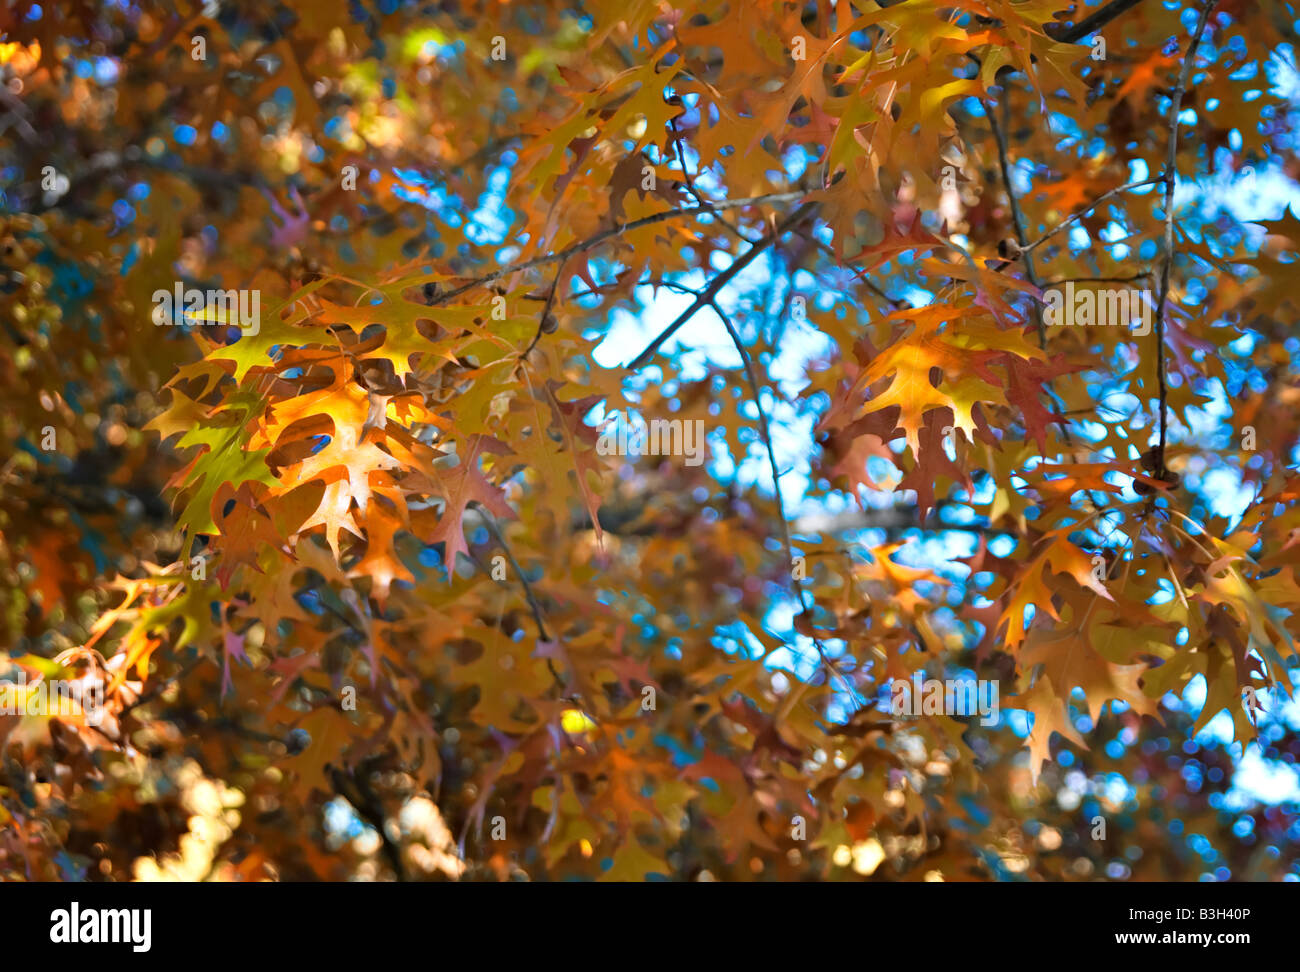 Grande image de l'orange vif les feuilles d'automne Banque D'Images